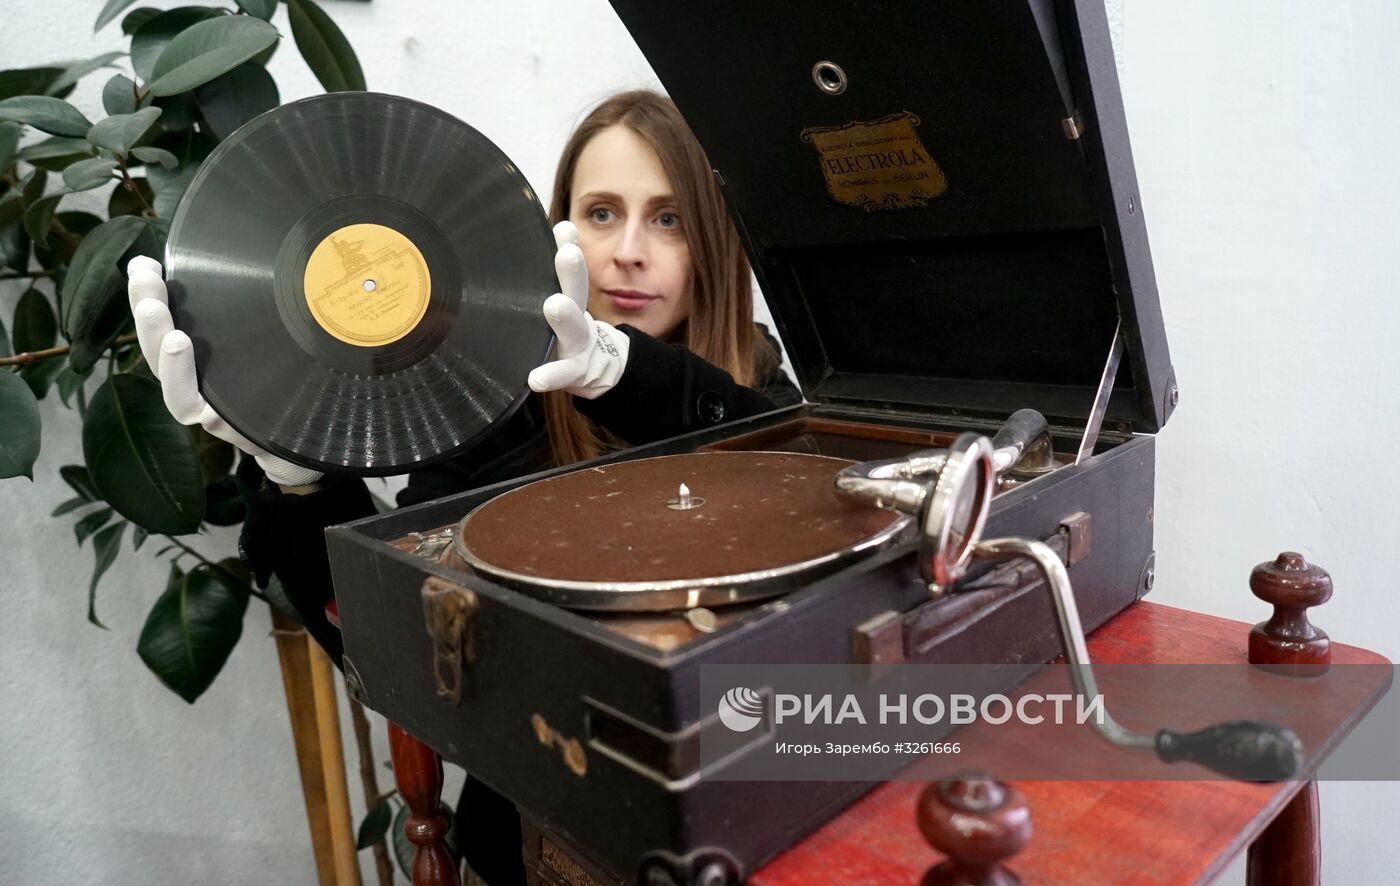 Выставка, посвященная истории радио, в Калининграде